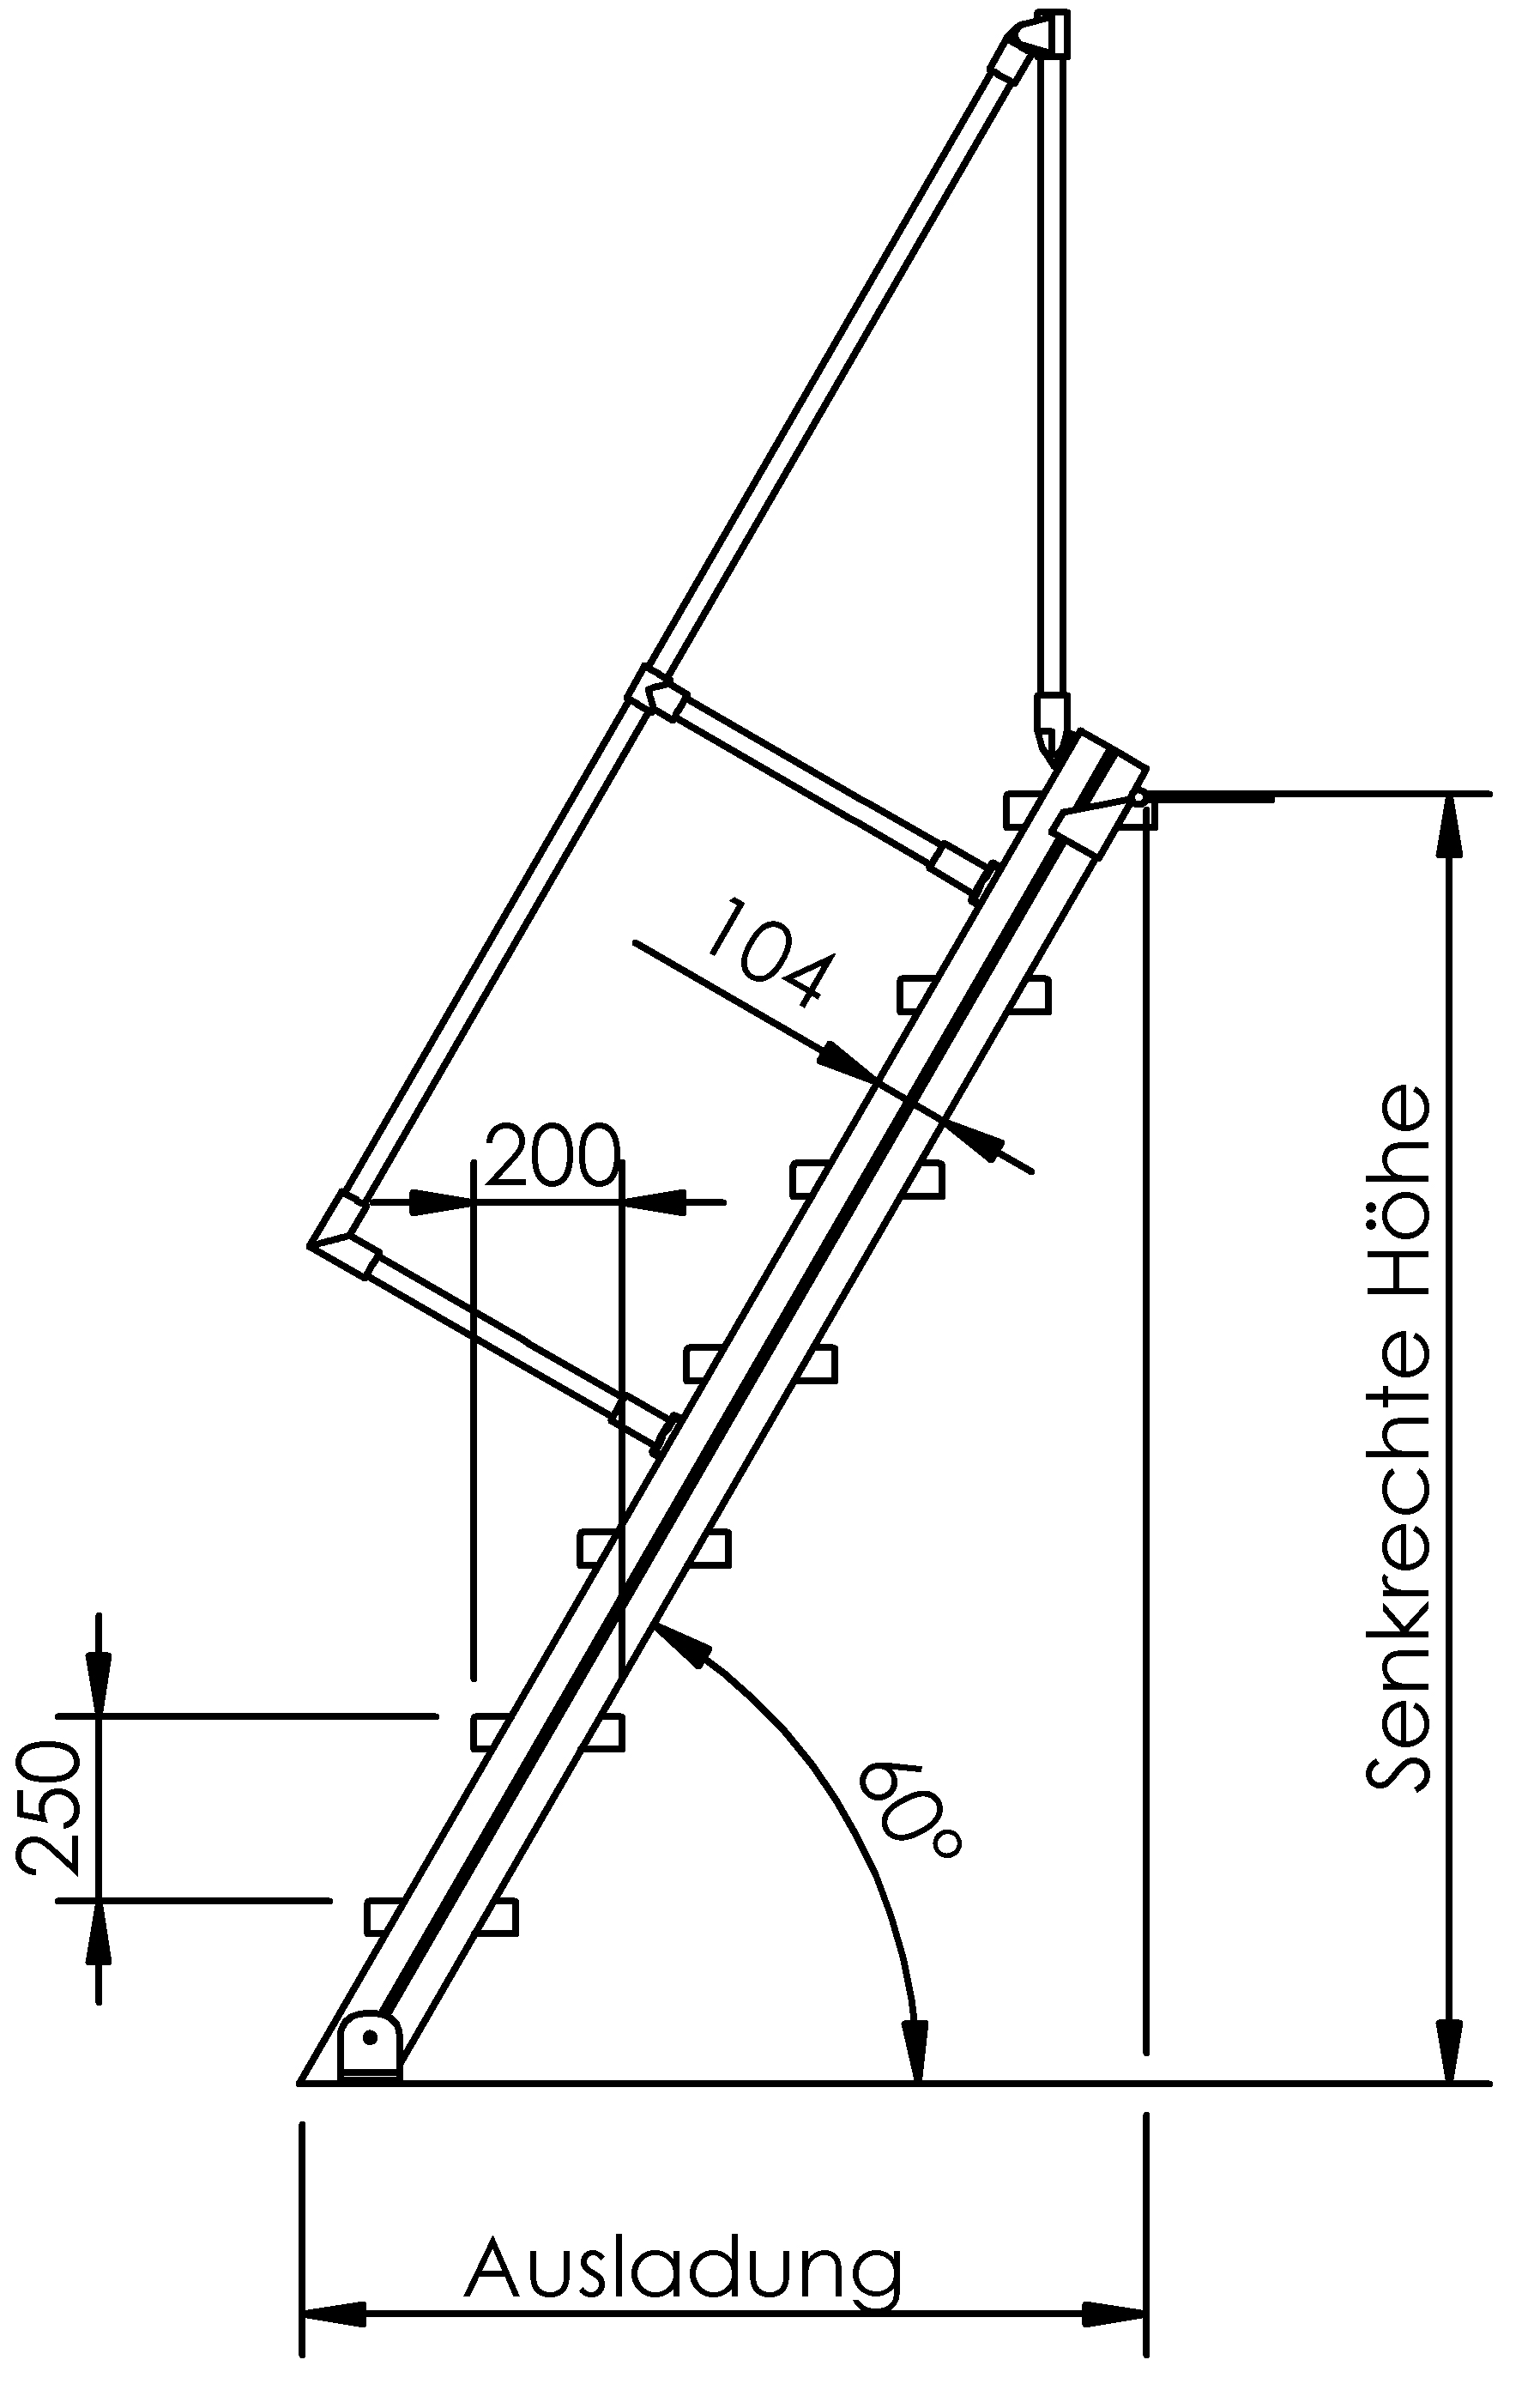 Selbstbautreppen, LW 8000mm, Stufen aus Stahl tzn, Neigung 45°